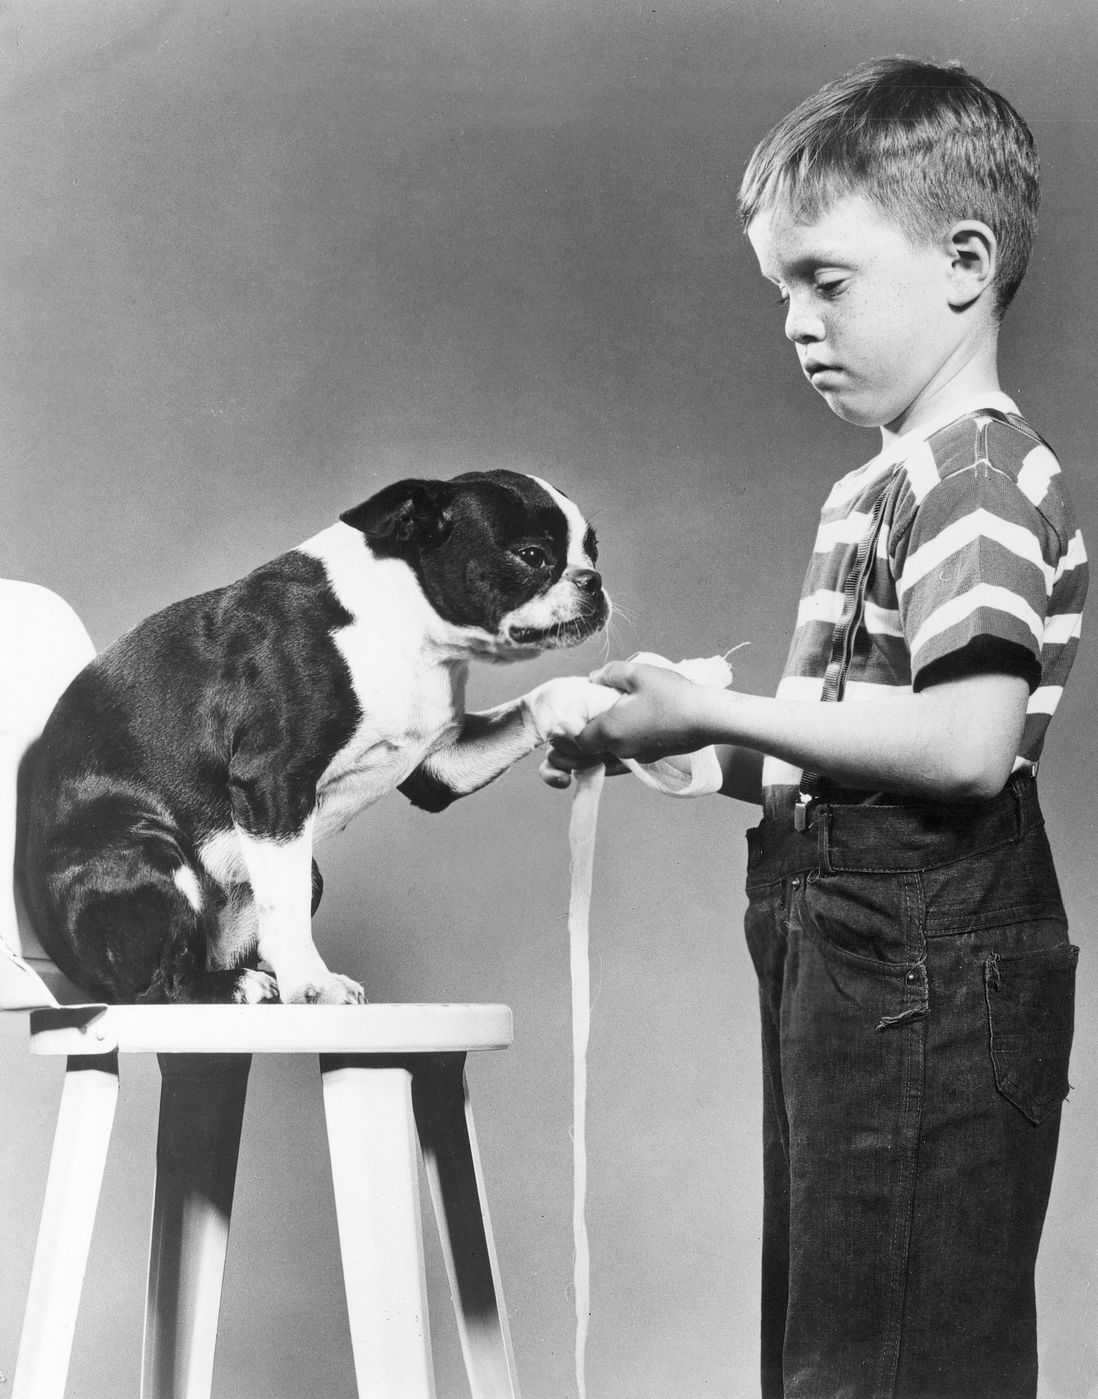 A boy bandaging a dog's paw<br>